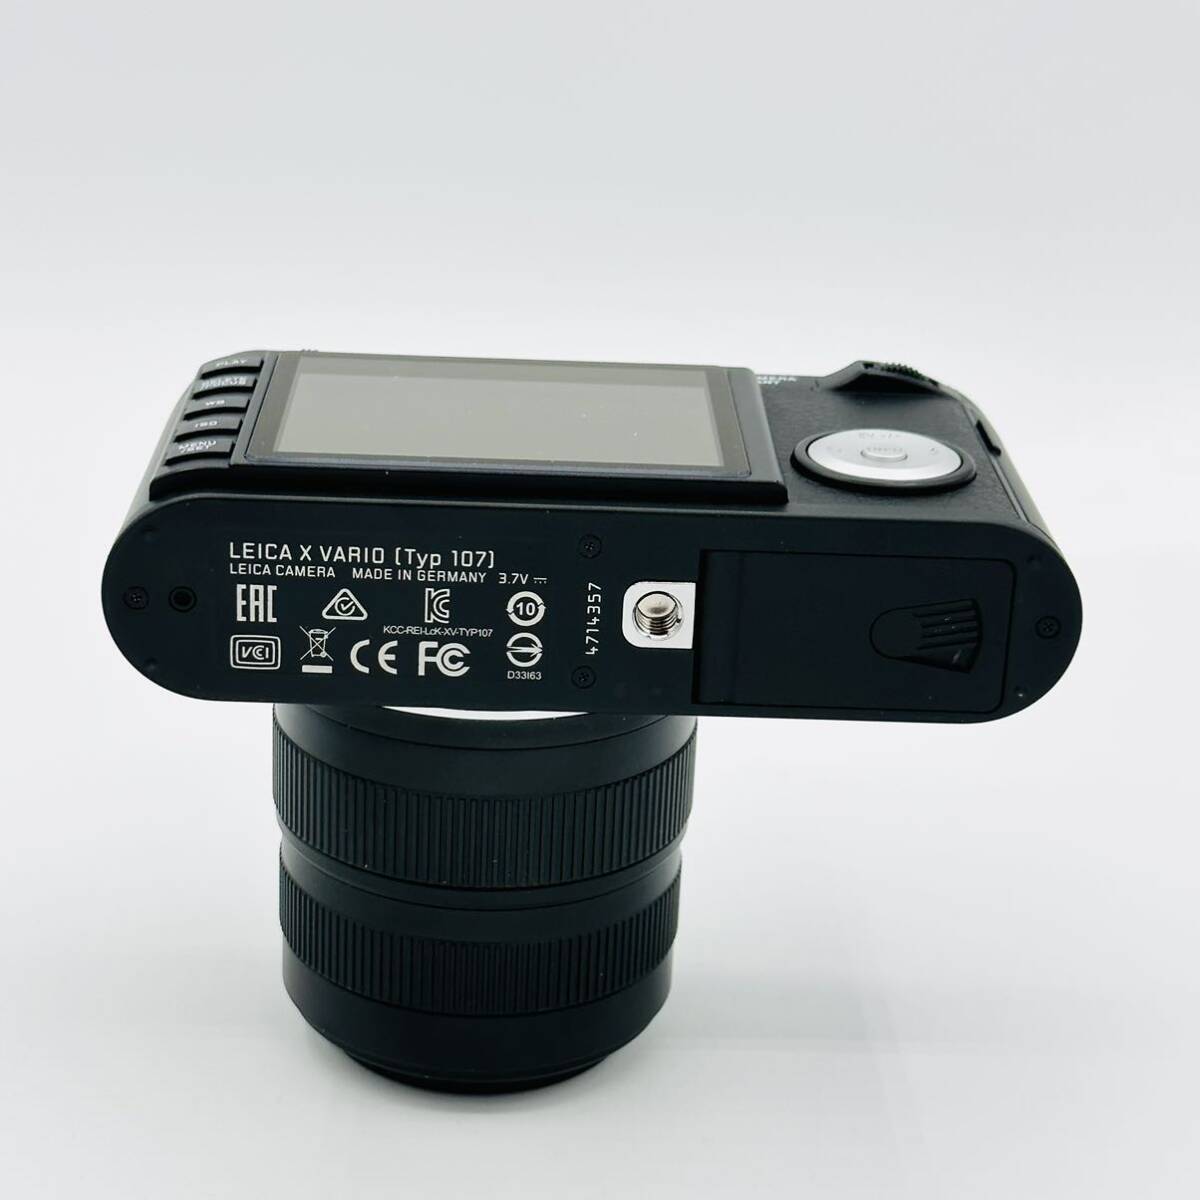 [ почти новый ]Leica цифровая камера Leica X шероховатость oTyp 107 1620 десять тысяч пикселей оптика 2.5 кратный zoom черный 18430